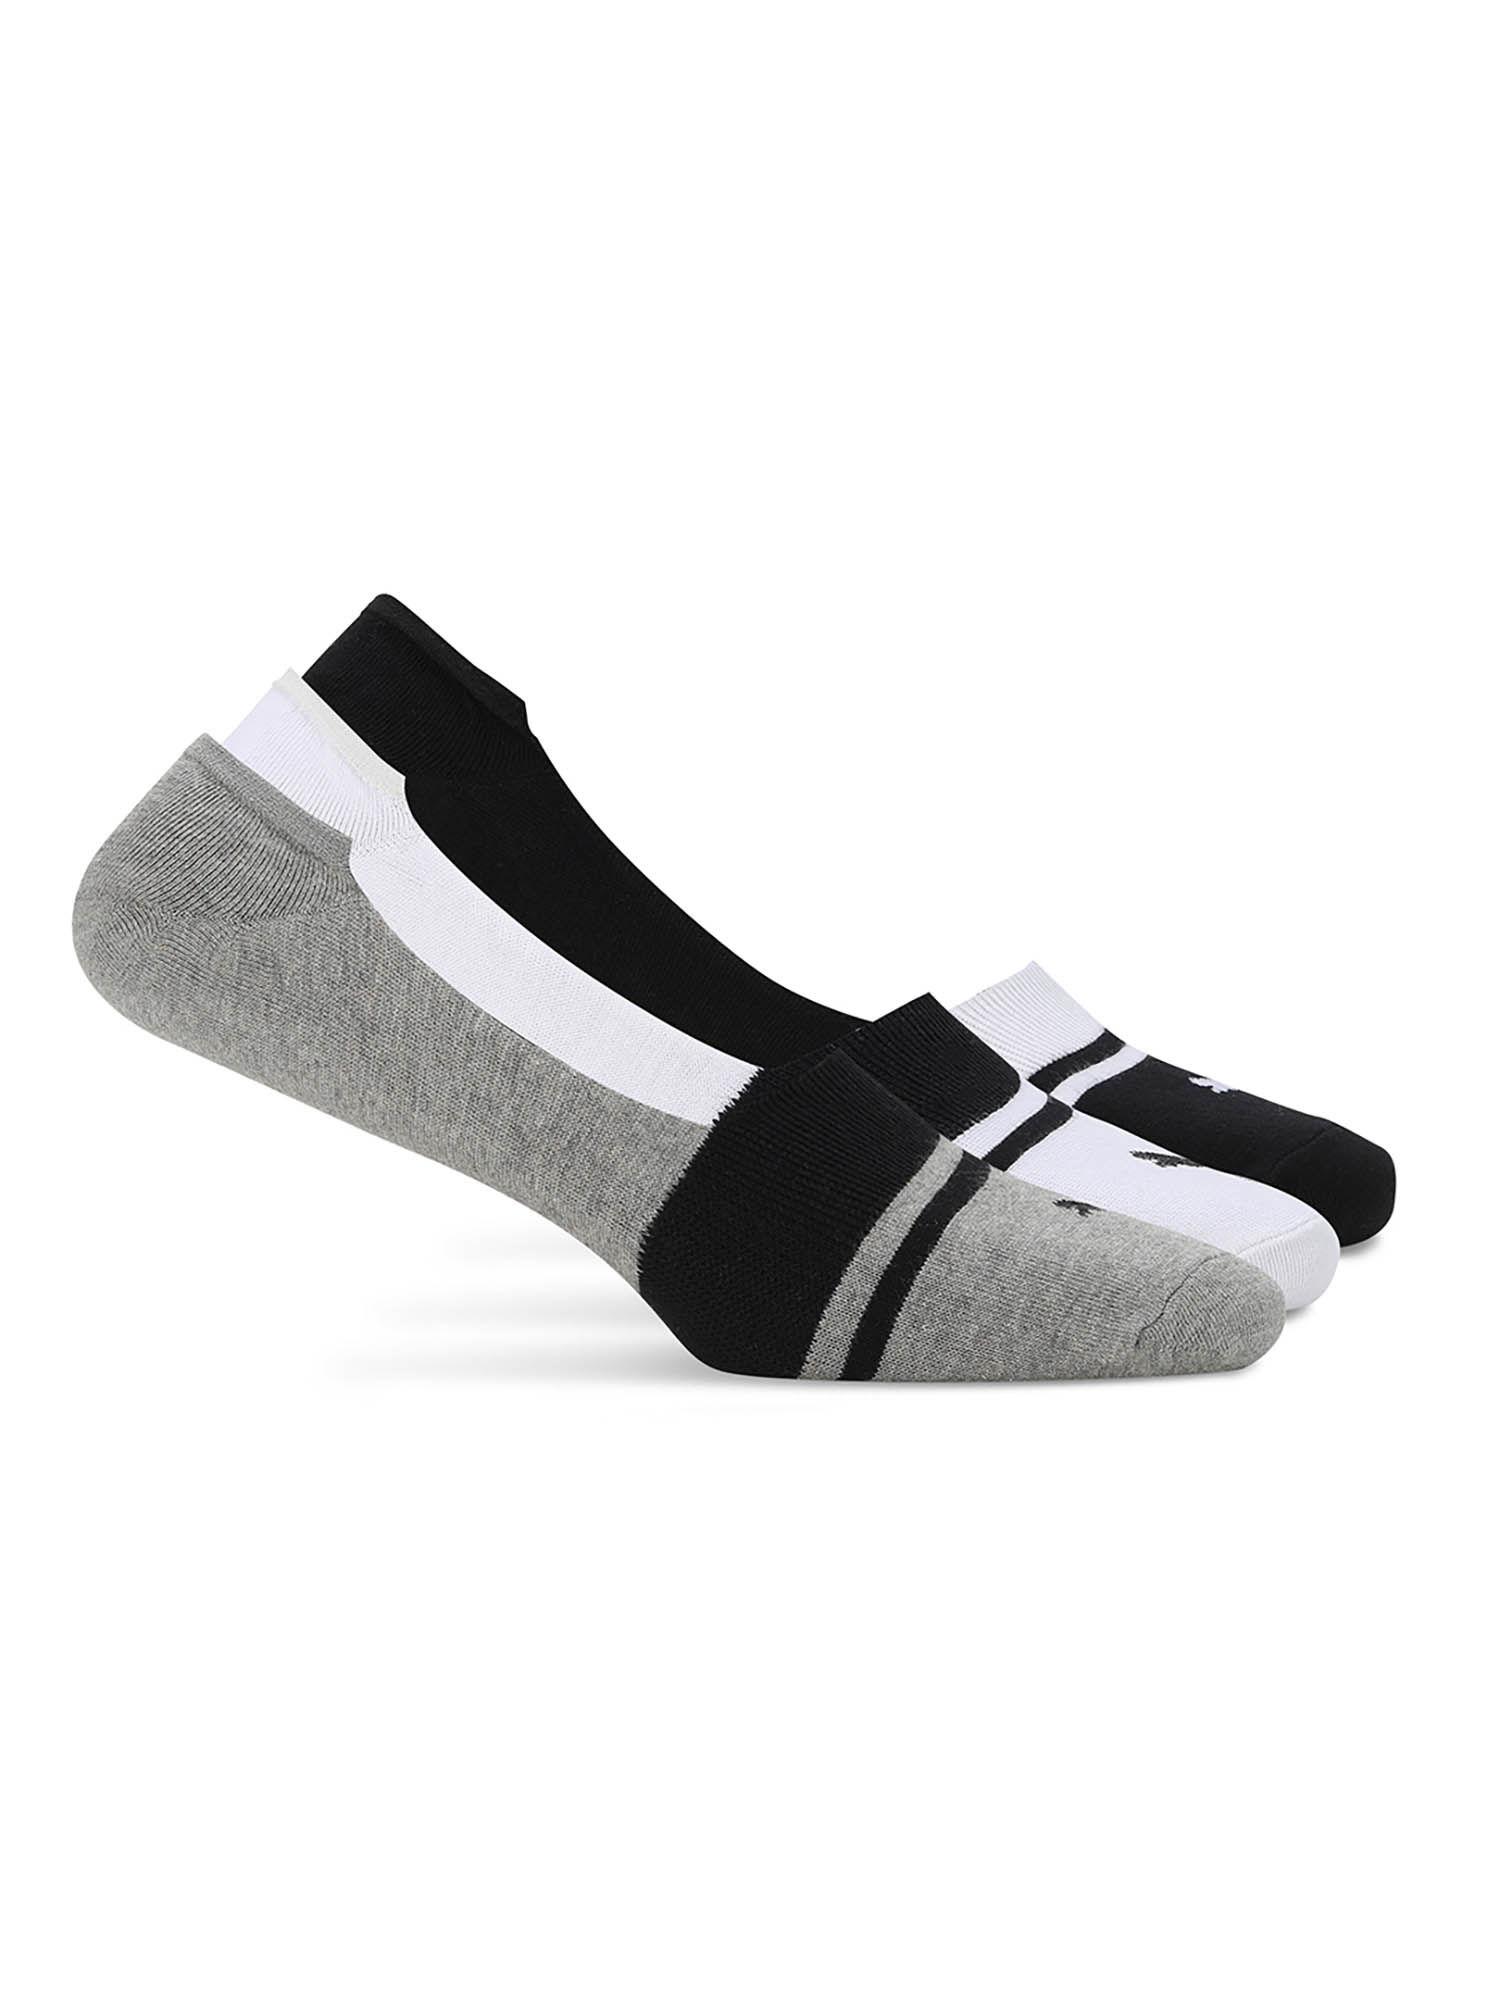 Heritage Footie Unisex Multi-color Socks (Pack of 3)